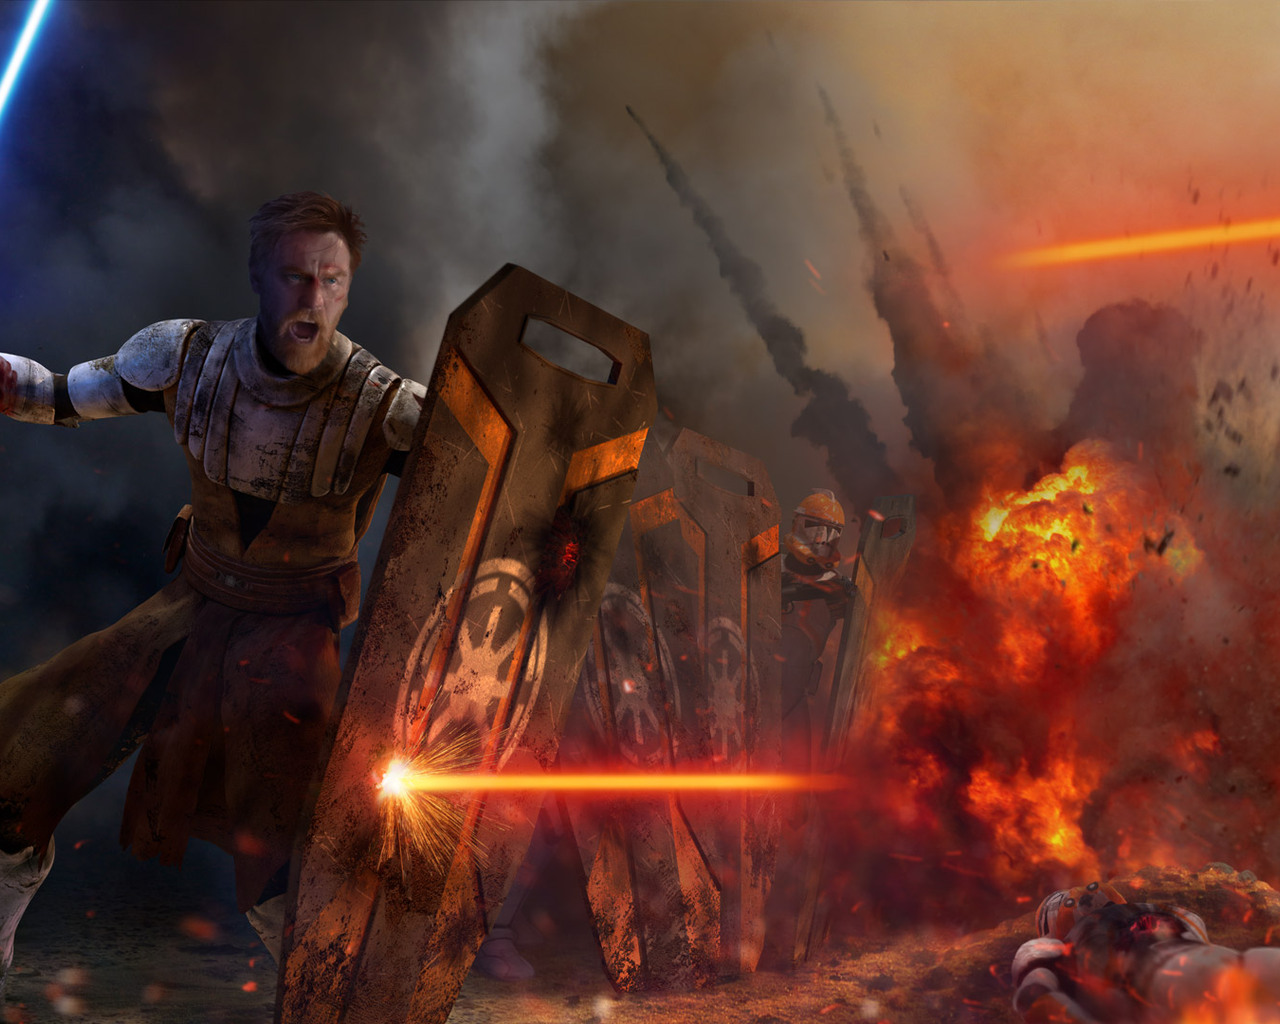 Star Wars Obi Wan Artwork Wallpapers